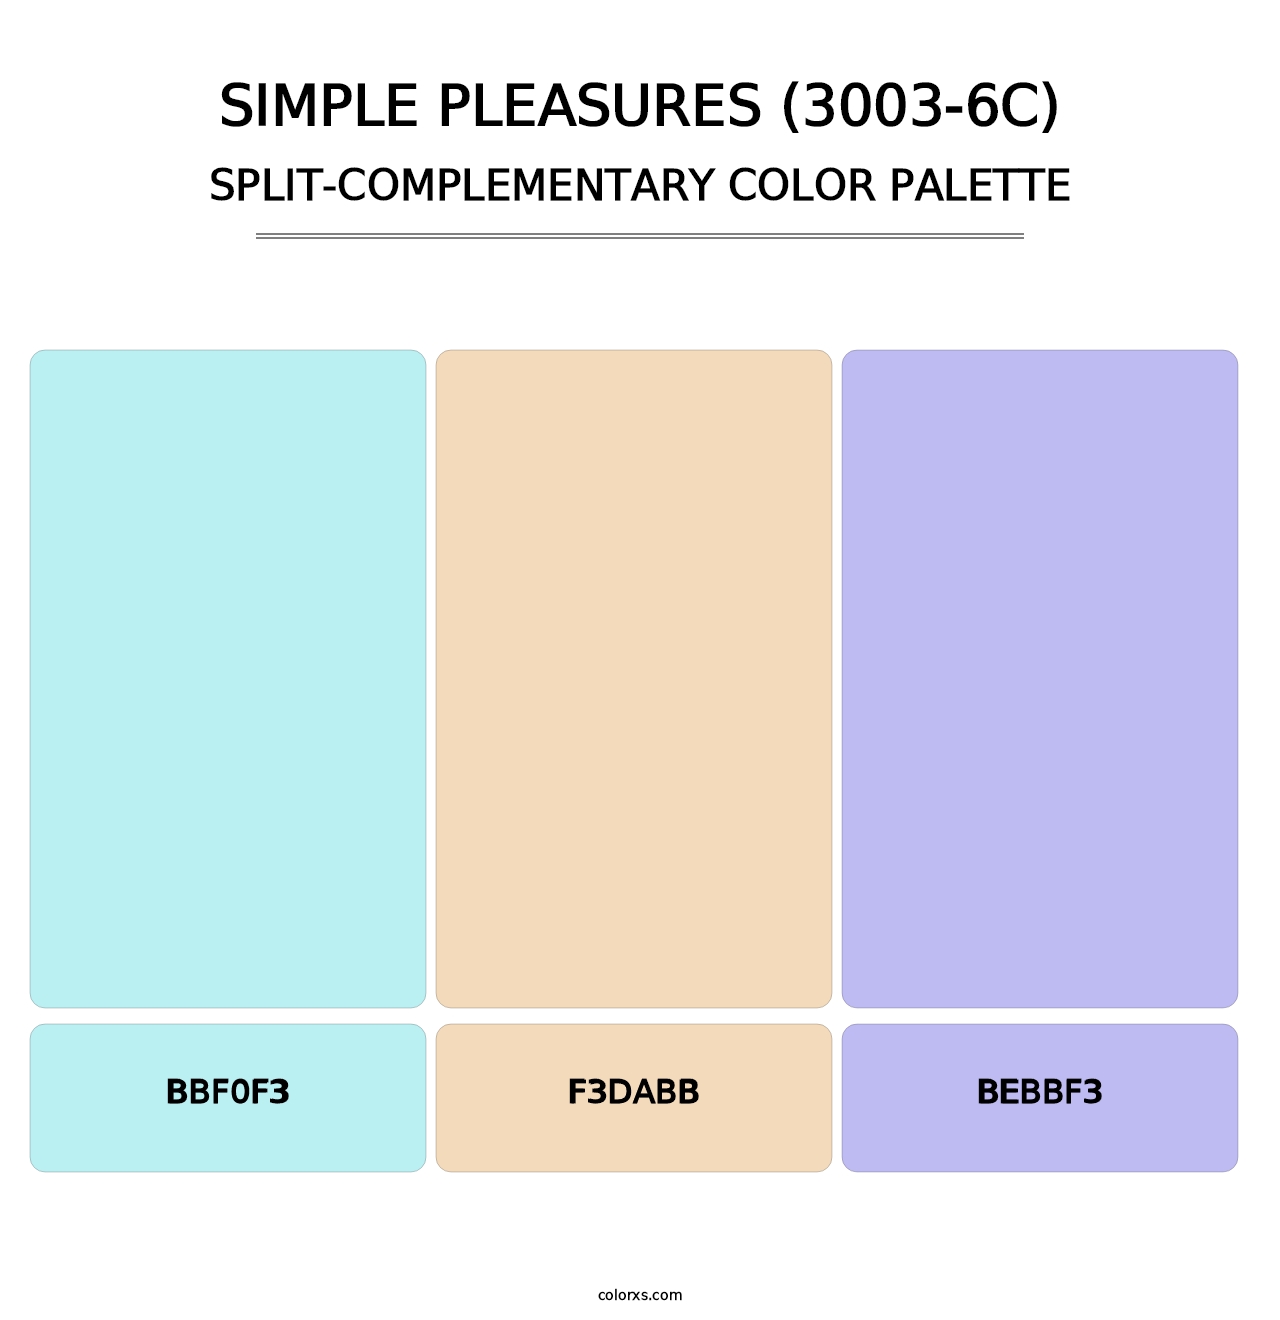 Simple Pleasures (3003-6C) - Split-Complementary Color Palette